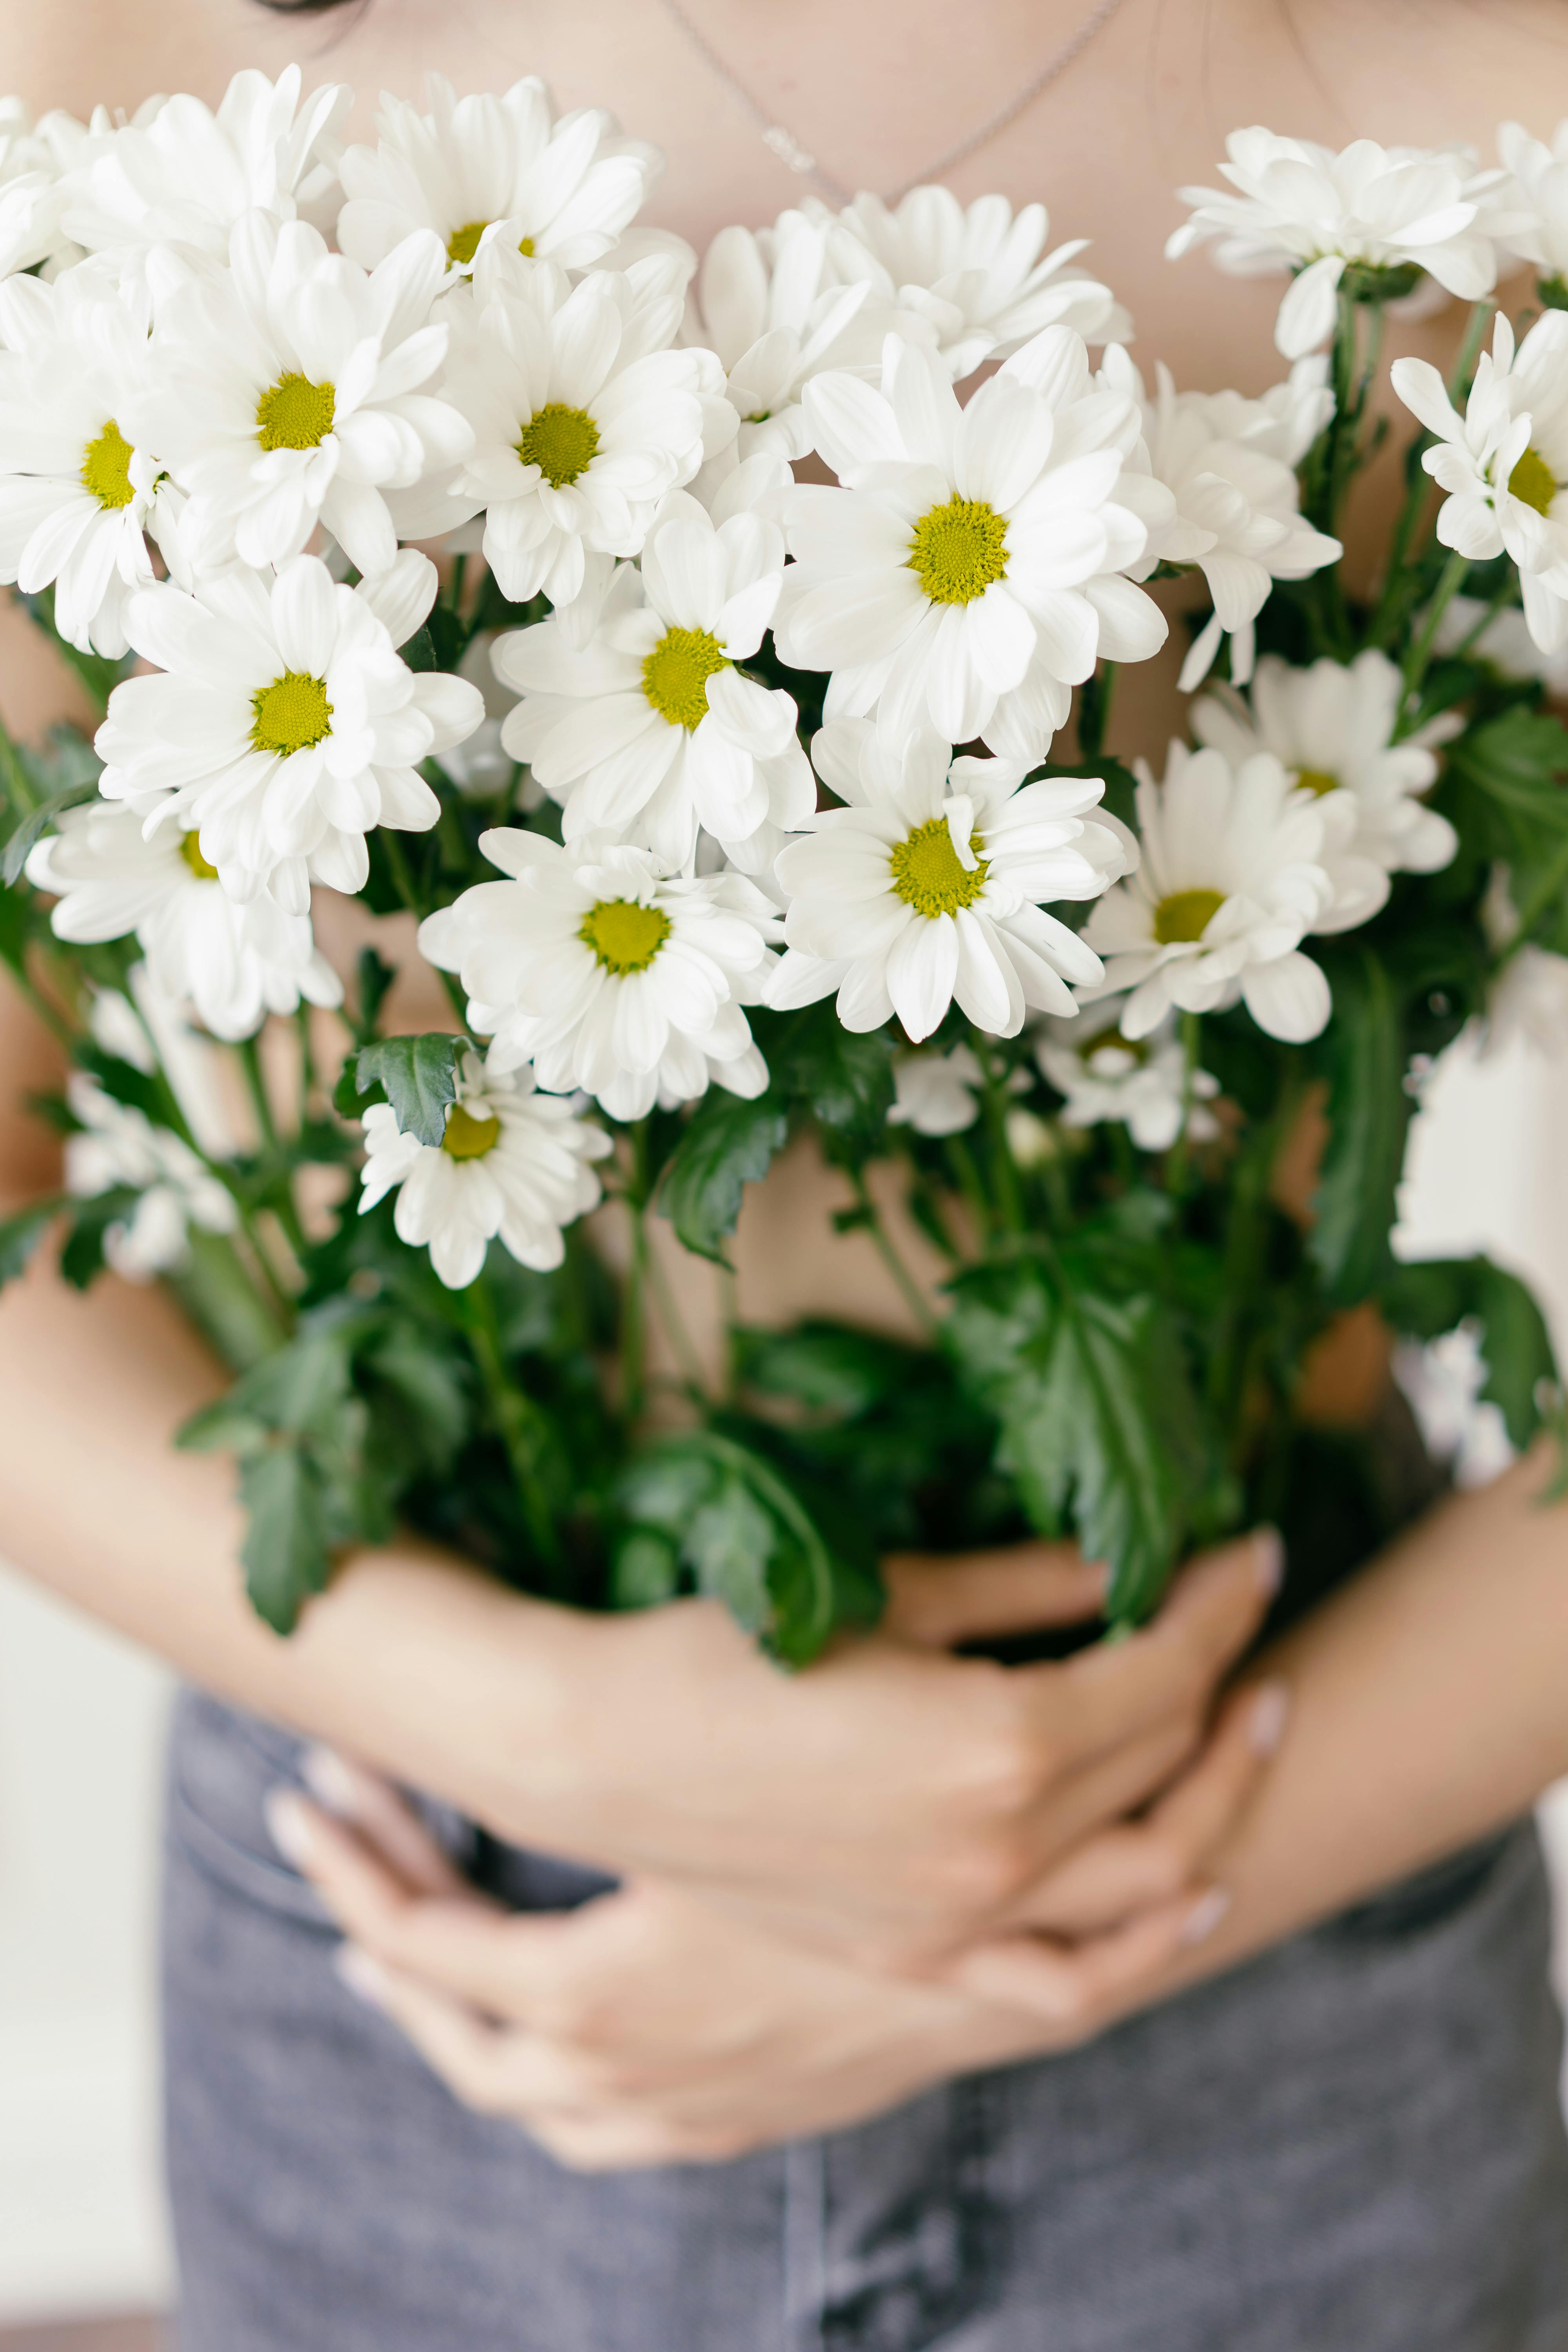 ẢNH HOA TRẮNG: Những bông hoa trắng tuyệt đẹp và sáng lấp lánh luôn thu hút ánh nhìn mỗi khi xuất hiện. Hãy lấy một chút thời gian để thưởng thức vẻ đẹp trang nhã của những bông hoa trắng trong hình ảnh này.